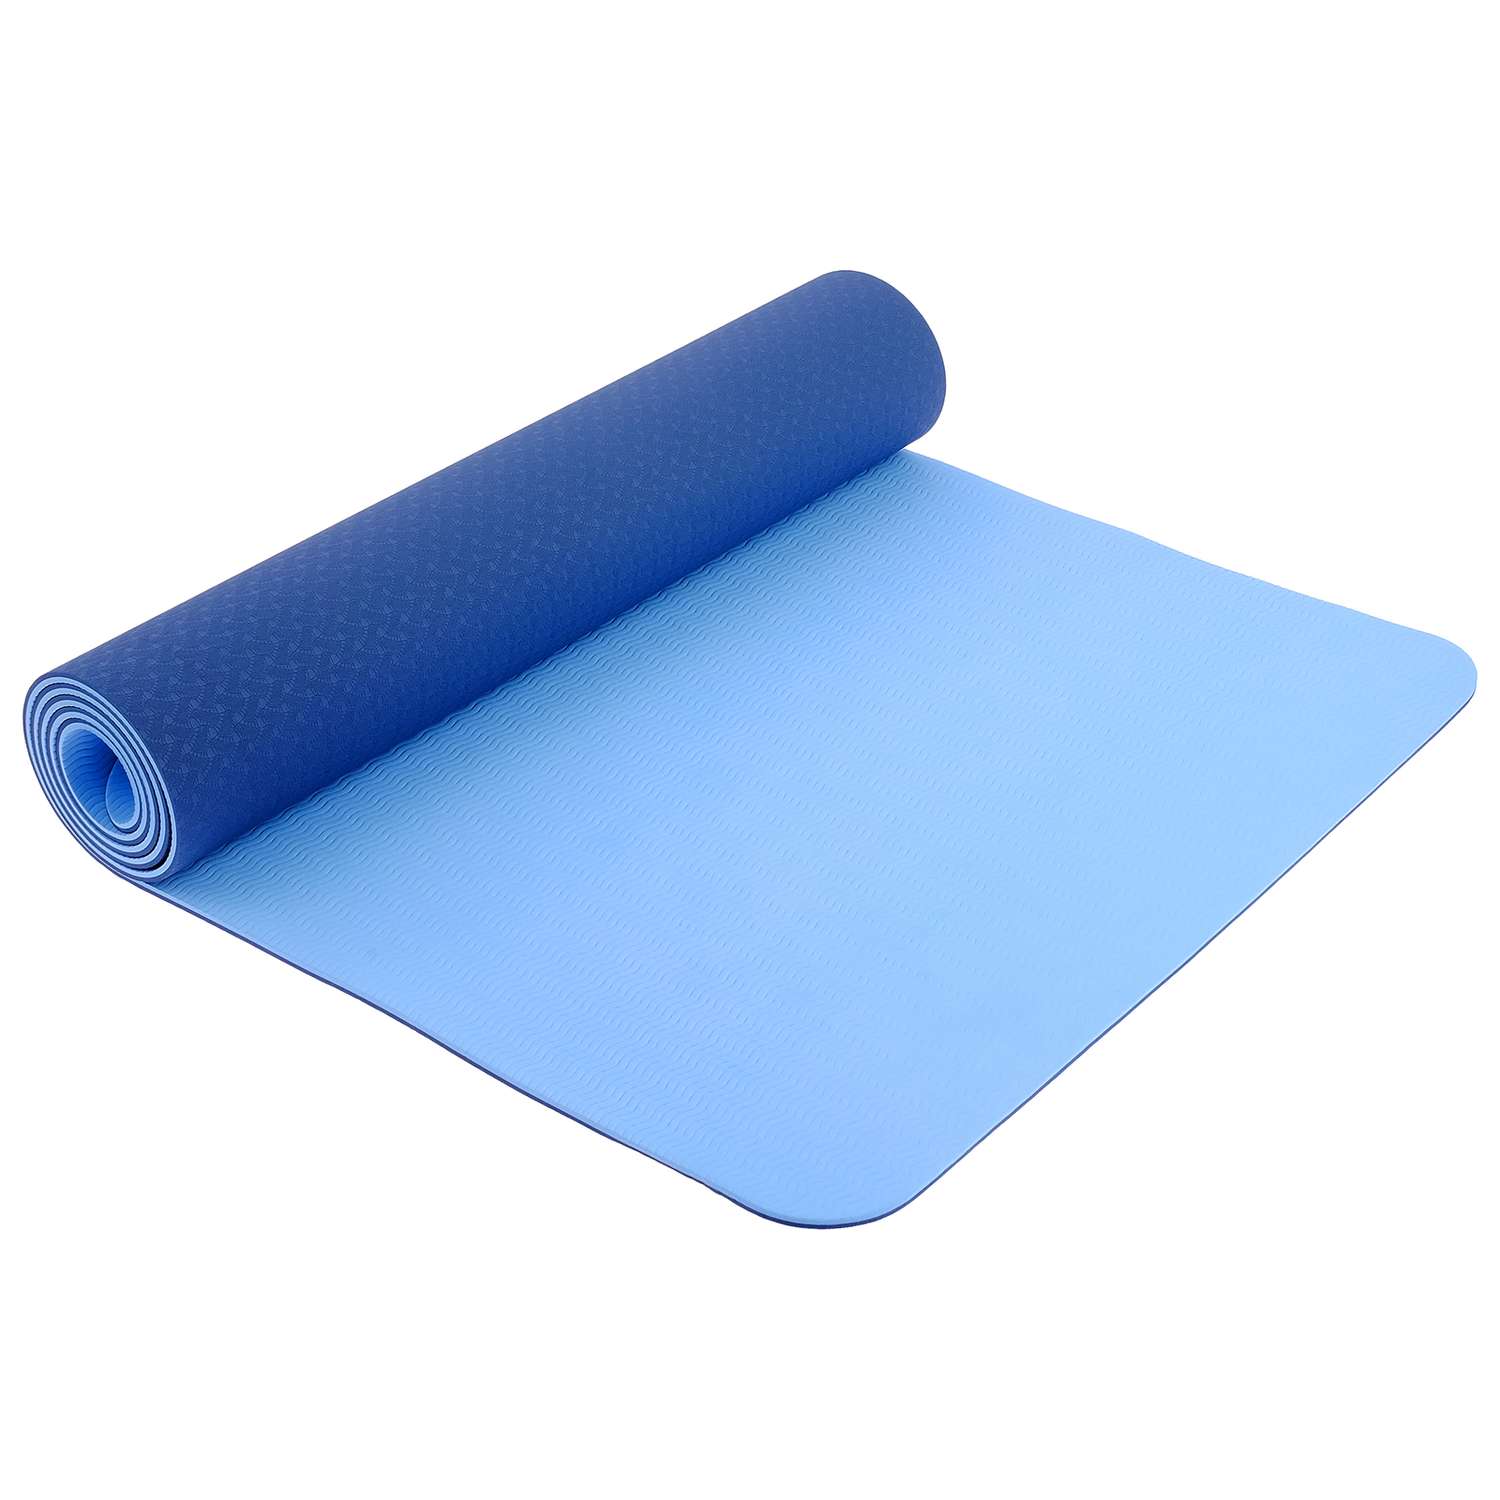 Коврик Sangh Для йоги двухцветный синий голубой - фото 1